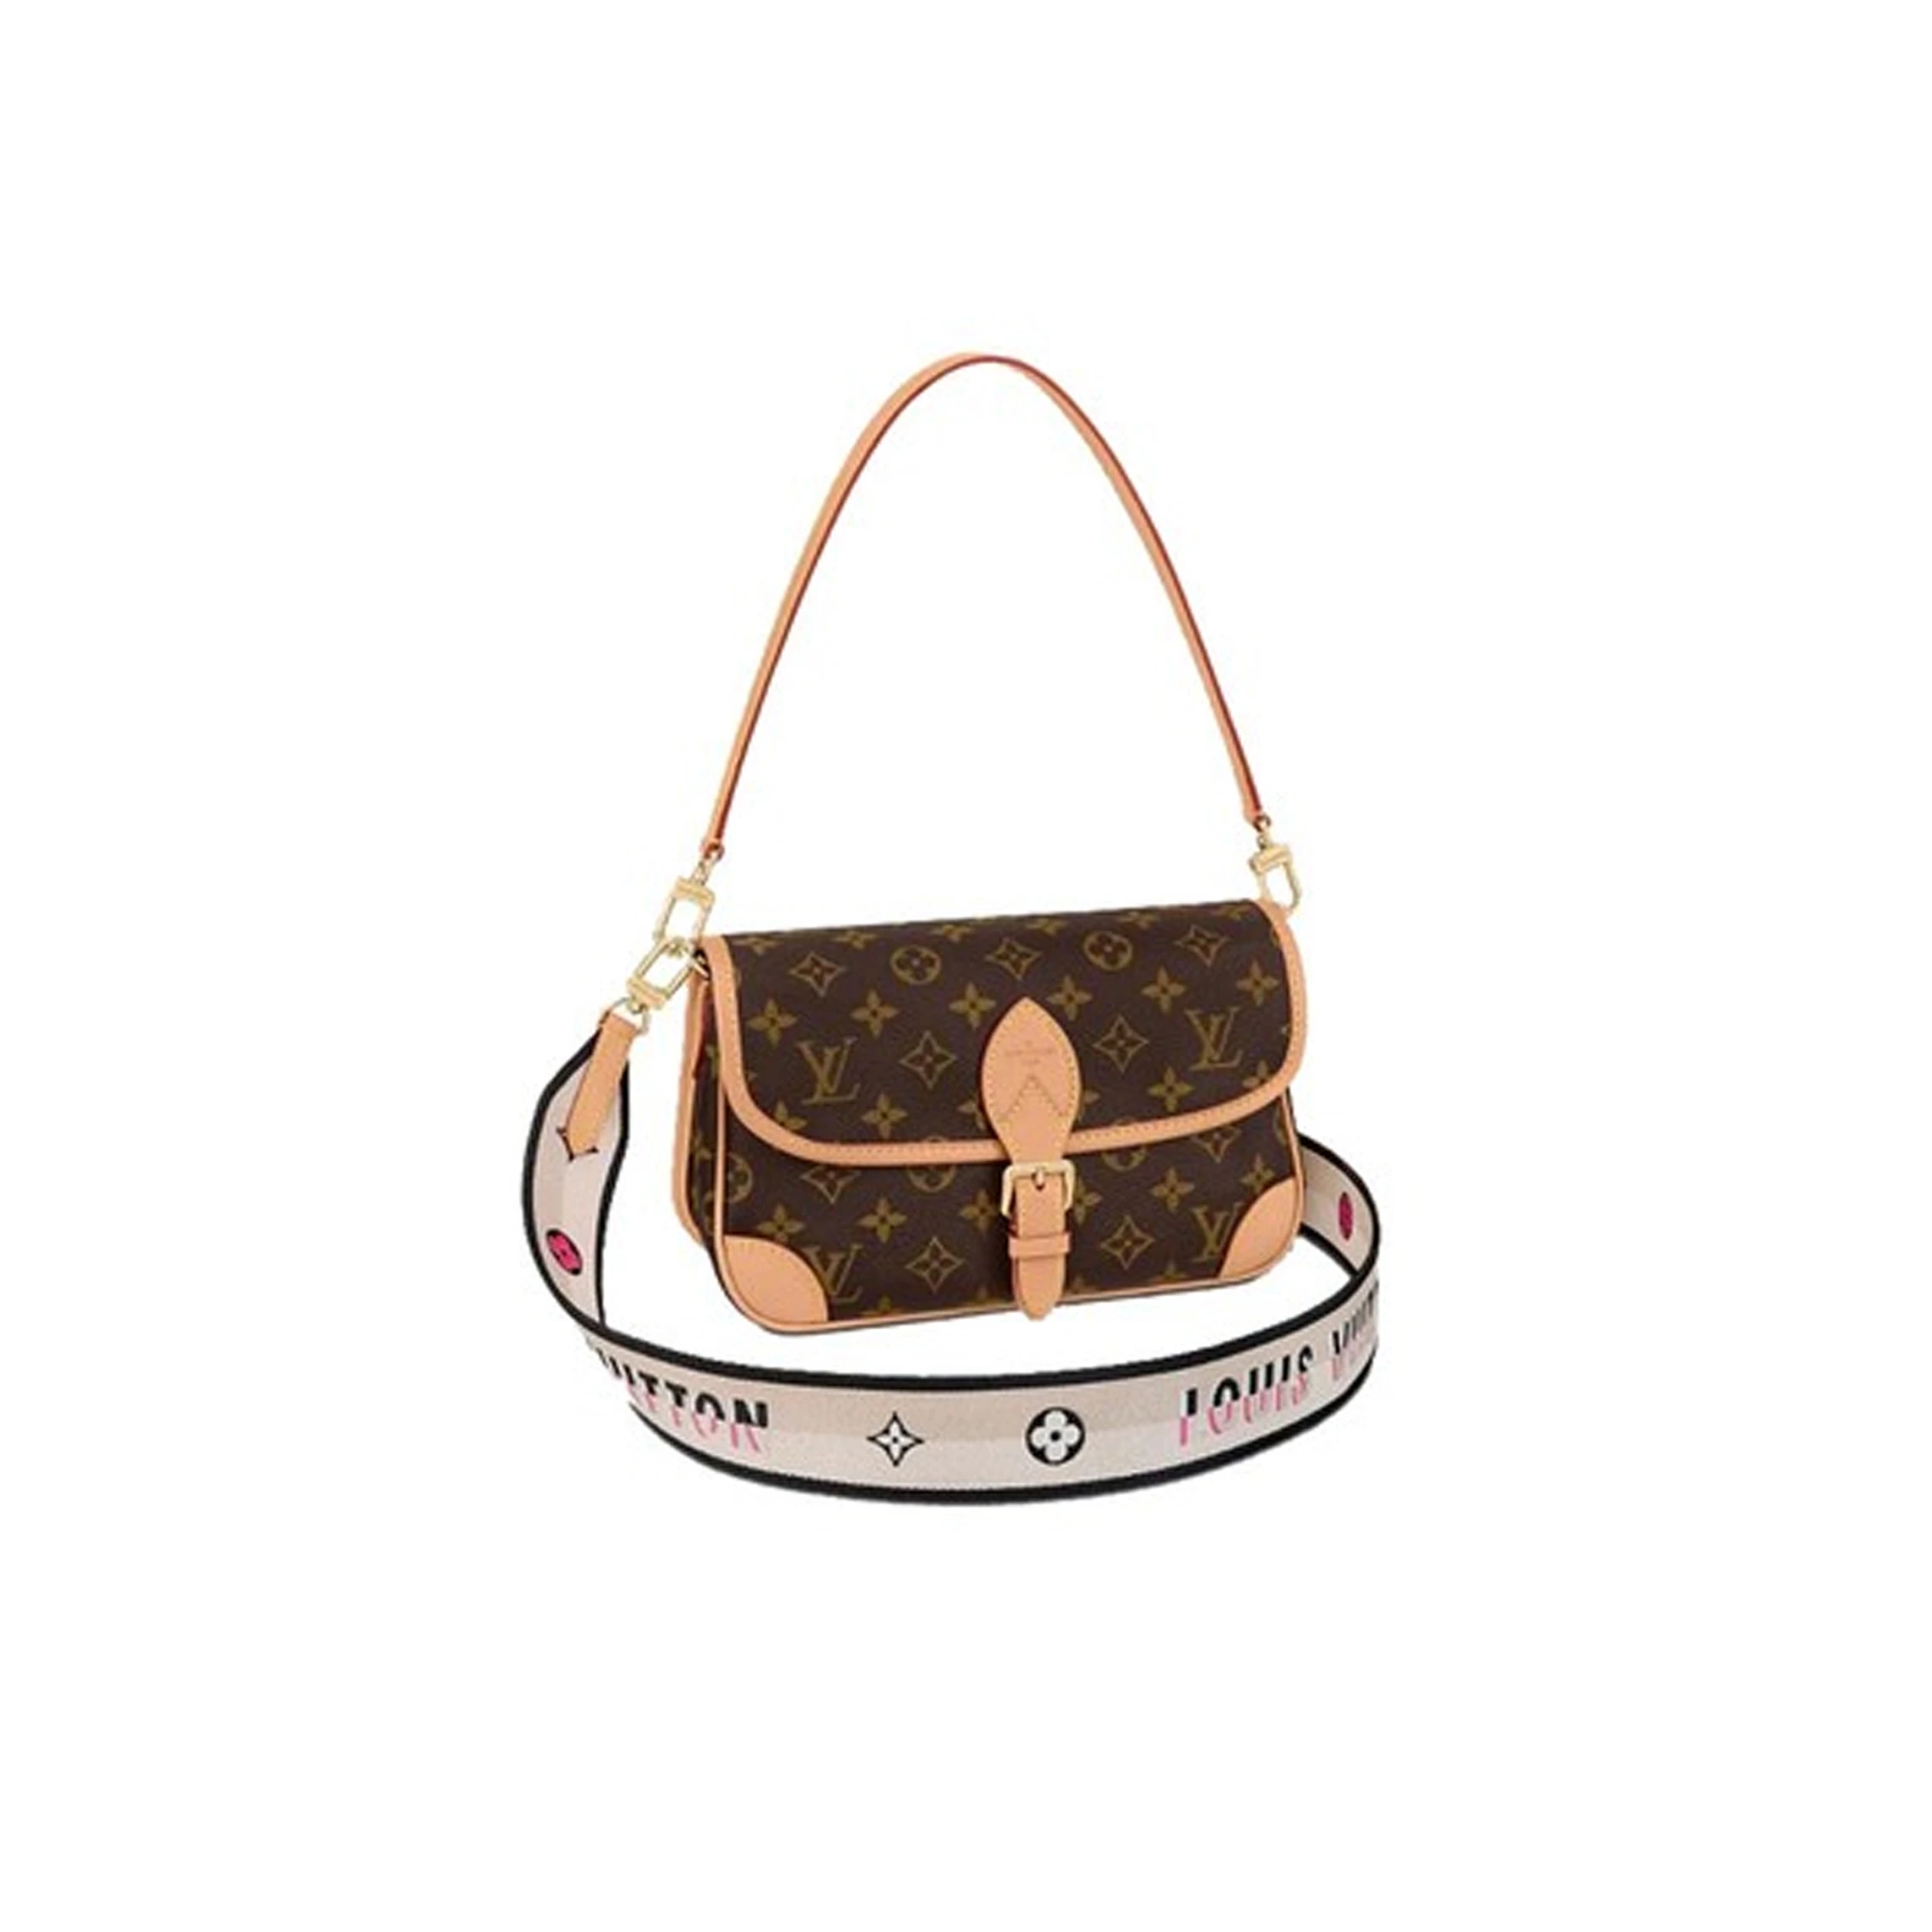 推荐Louis Vuitton/路易威登 DIANE 女士手袋单肩包双�肩带 M45985 送礼好物商品